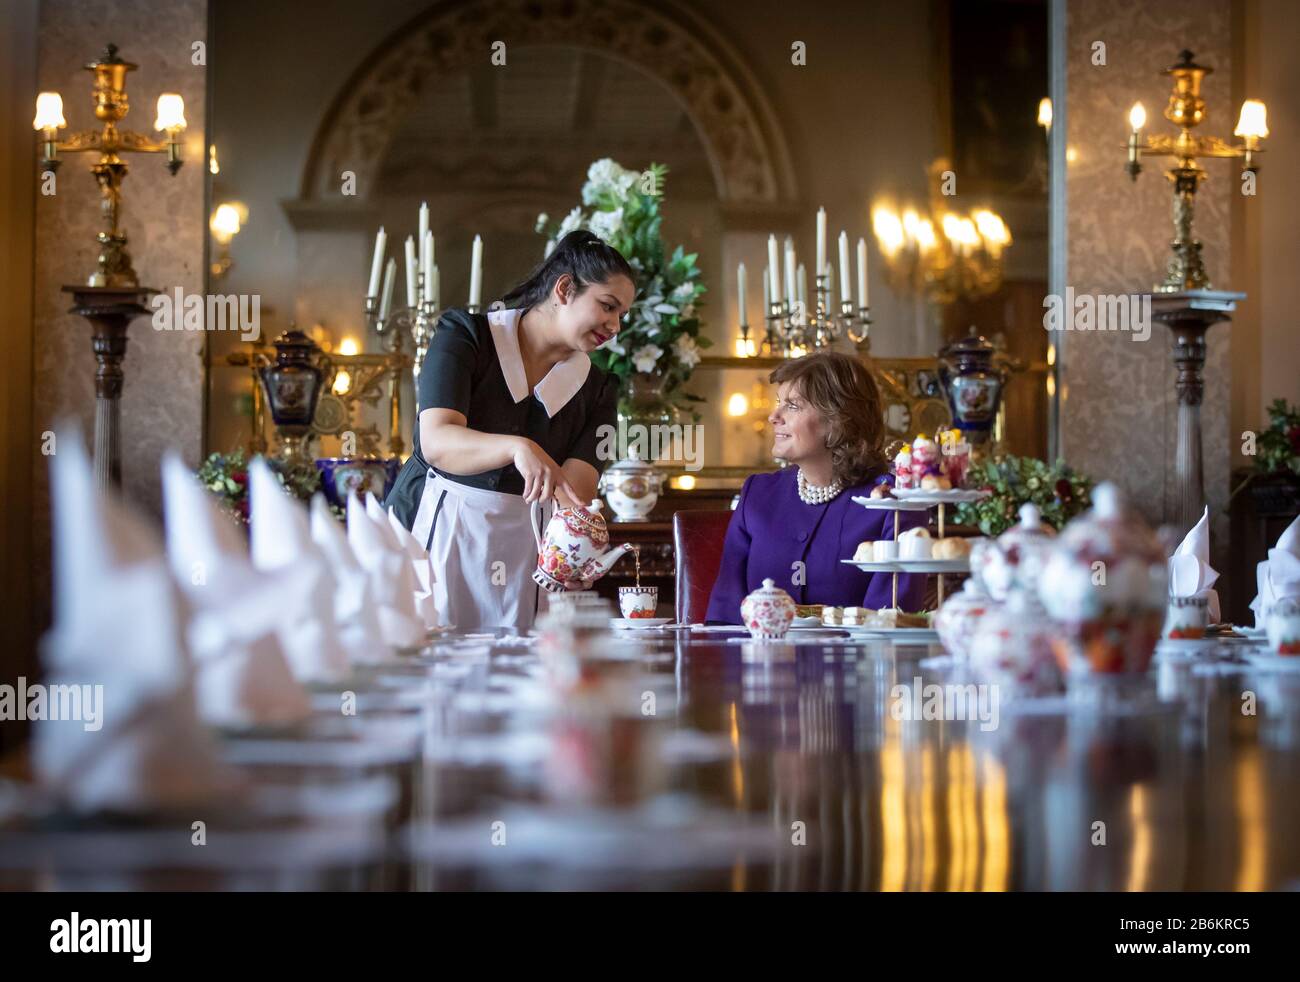 Emma Emanmaniera, Duchessa di Rutland (a destra), viene servito il tè da Lliana Dimitrove, durante l'evento di lancio per un tè Pomeridiano reale ispirato da Netflix's The Crown, nella sala da pranzo dello stato al Castello di Belvoir, Grantham. Foto Stock